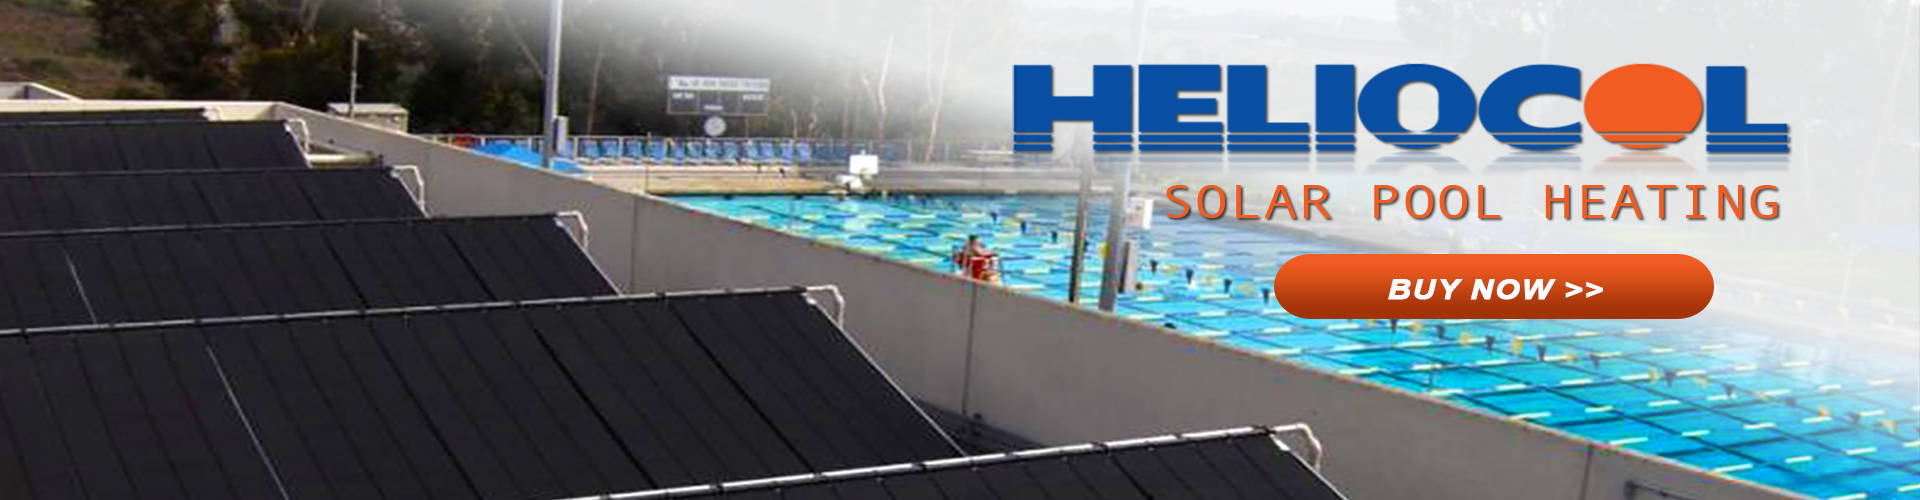 Heliocol Solar Pool Heating